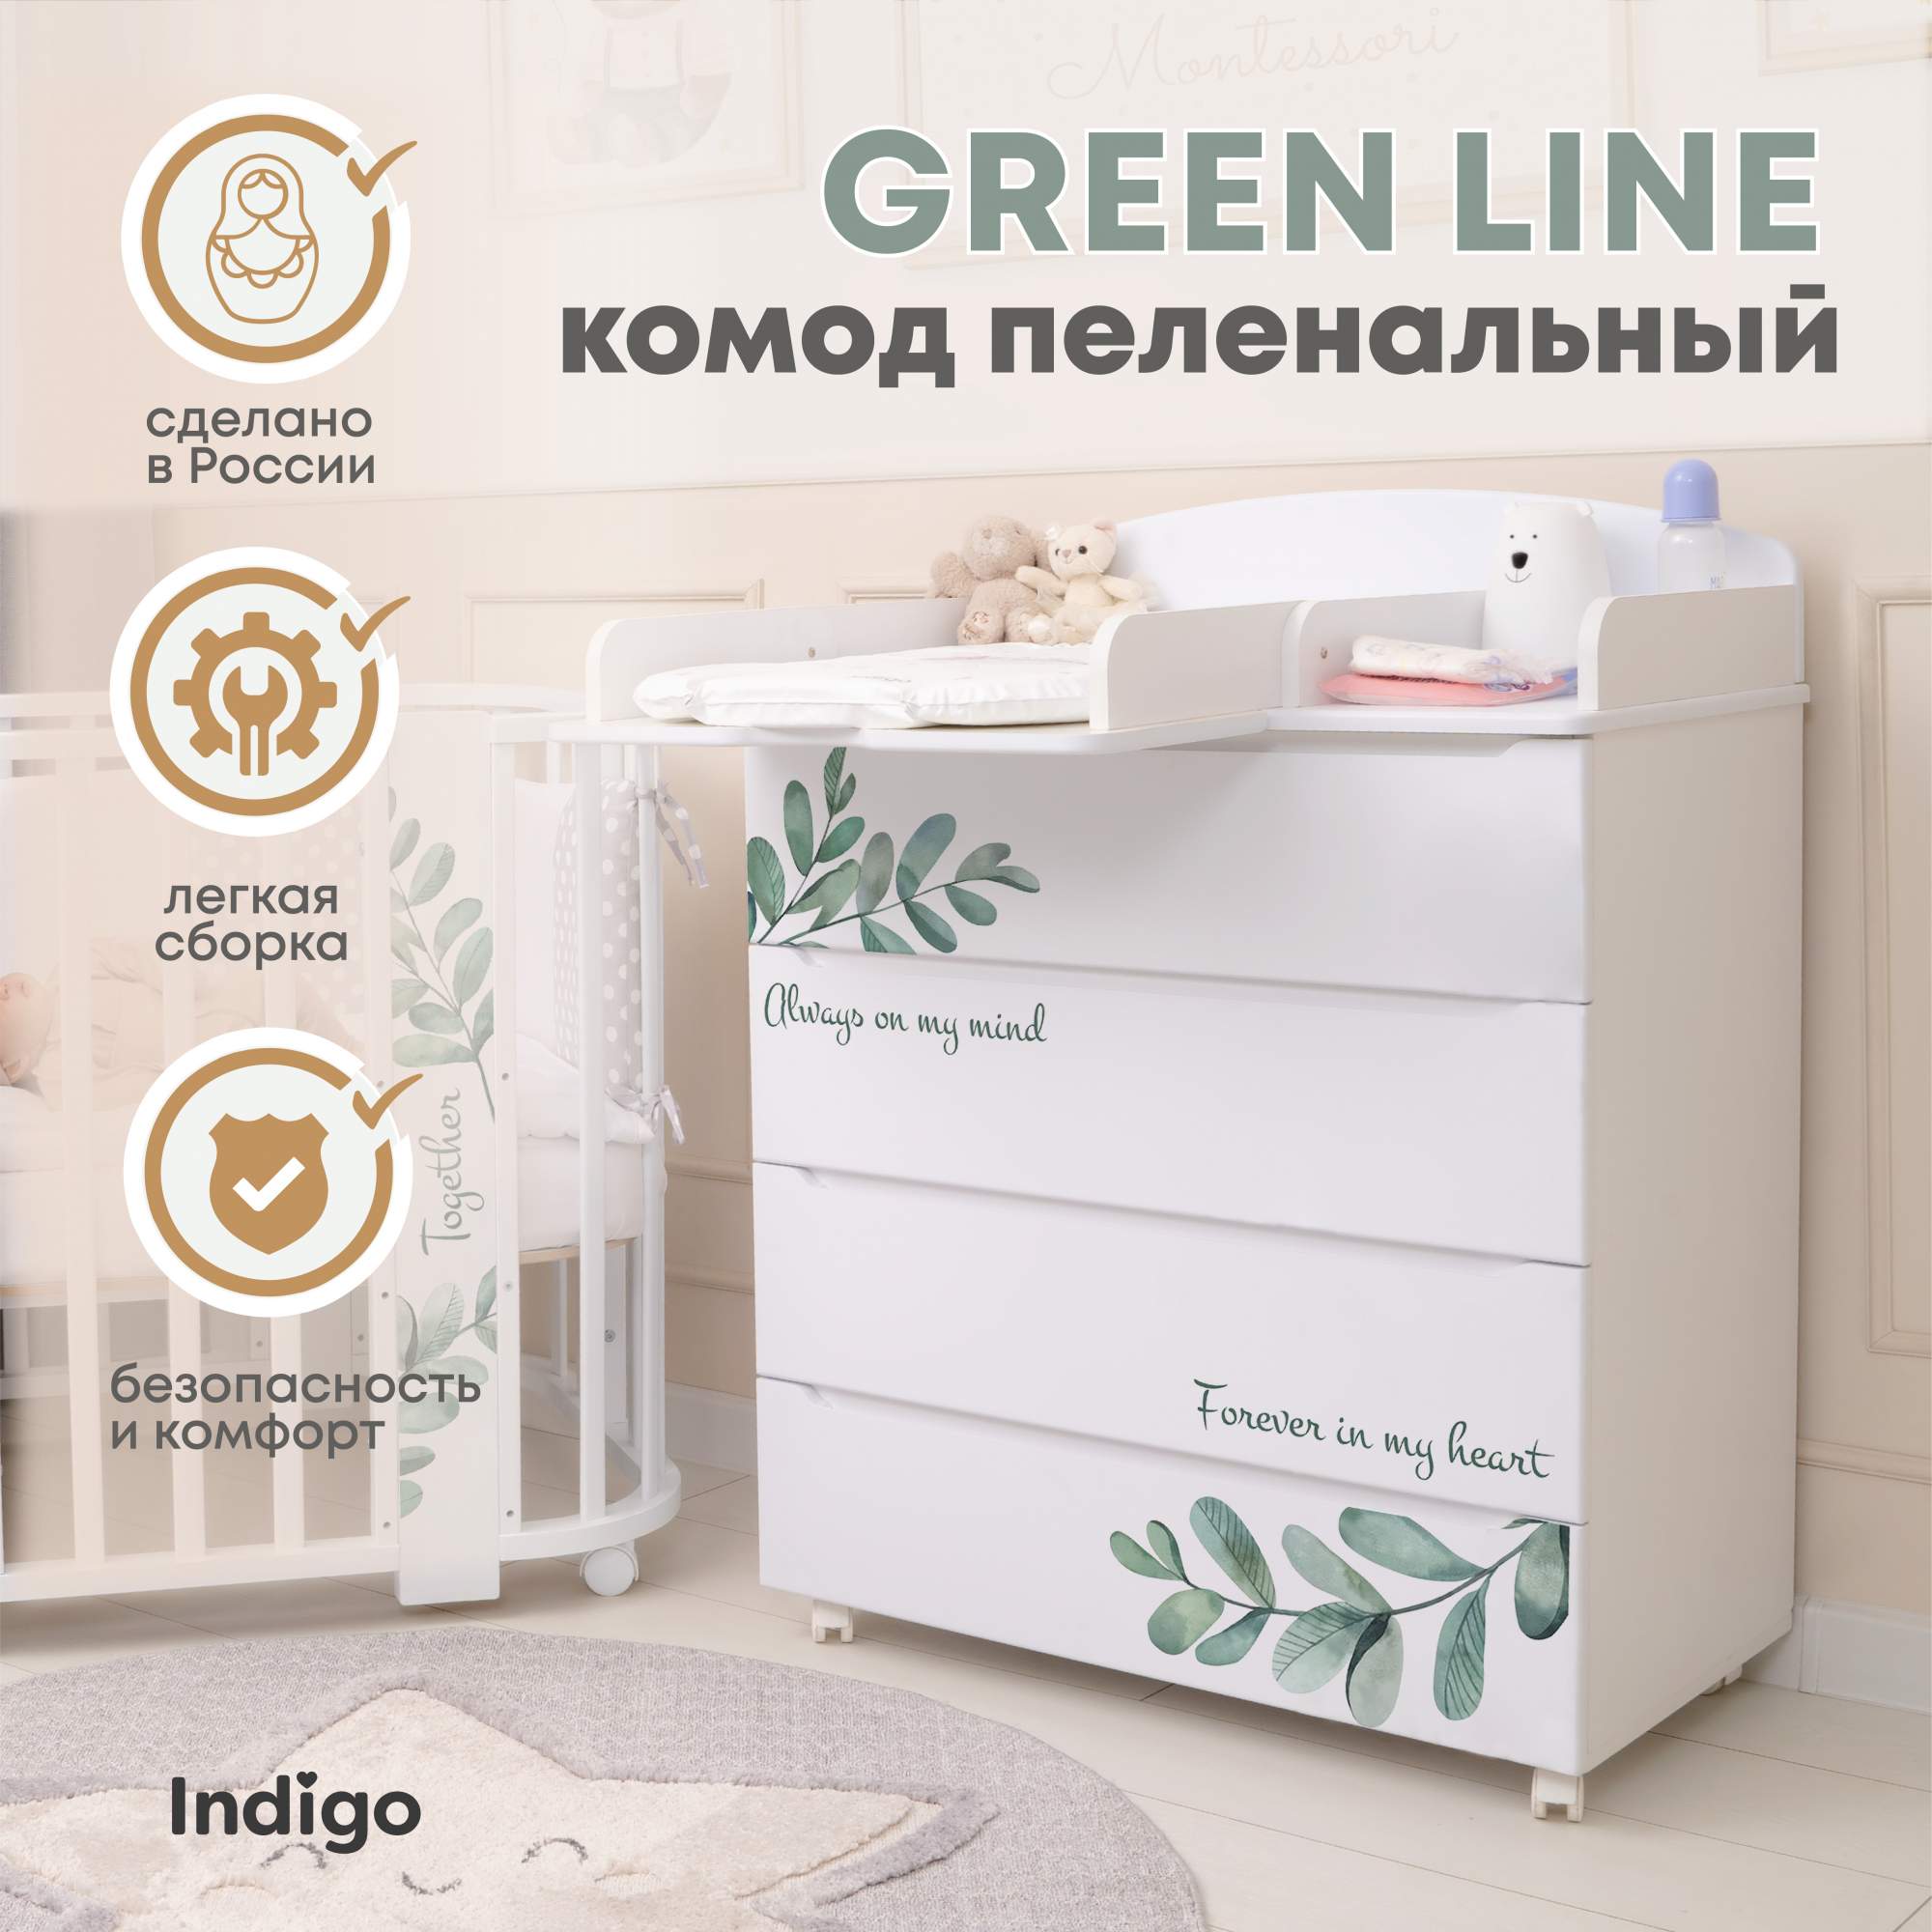 Пеленальный комод Indigo Green Line 800/4, листочки